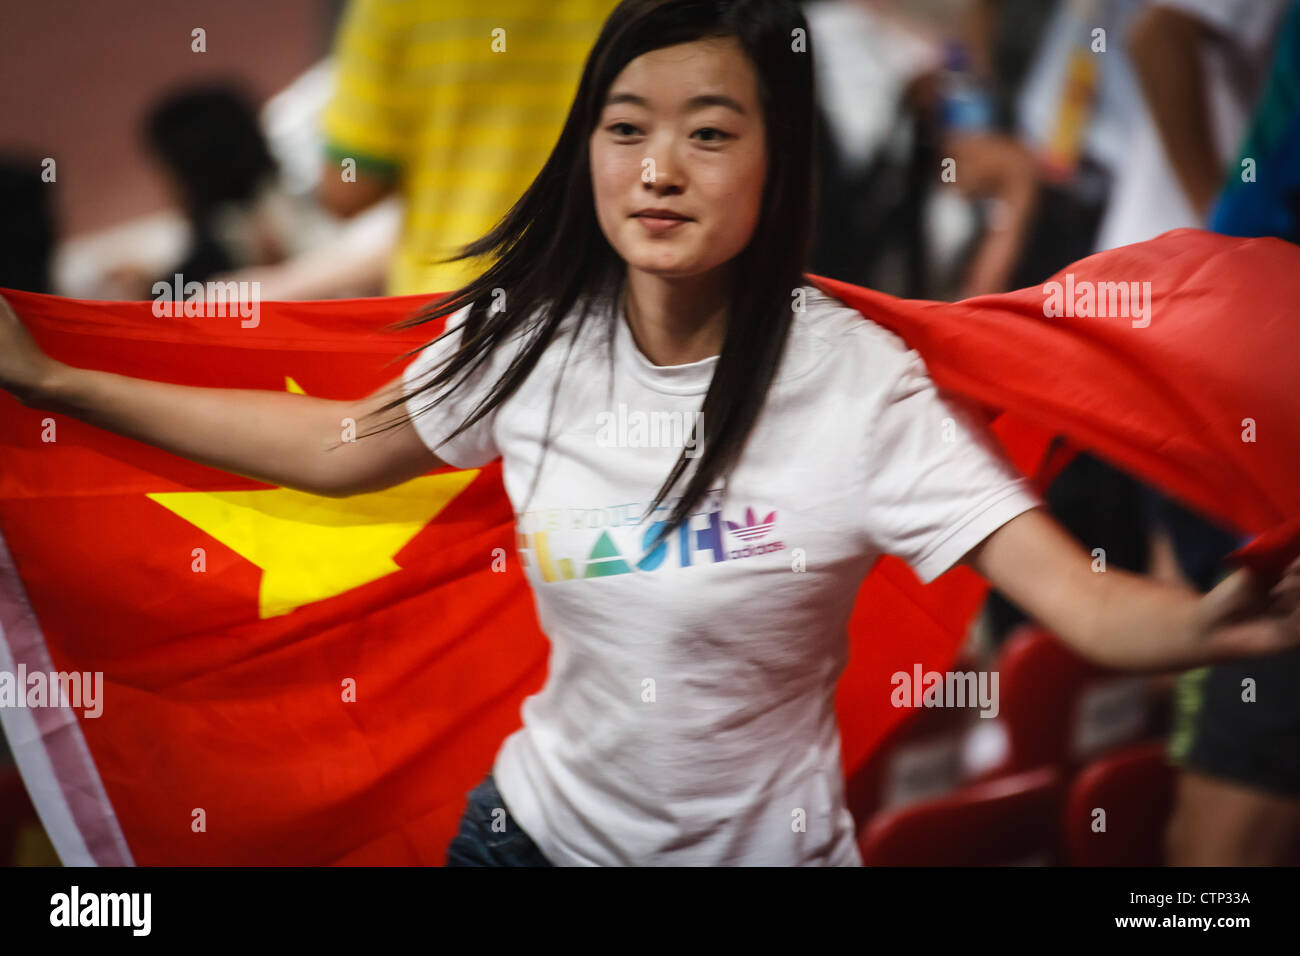 Pechino, Cina - agosto 18, 2008: femmina spettatore festeggia i giochi estivi agitando grande bandiera cinese nel nido di uccelli stadium Foto Stock